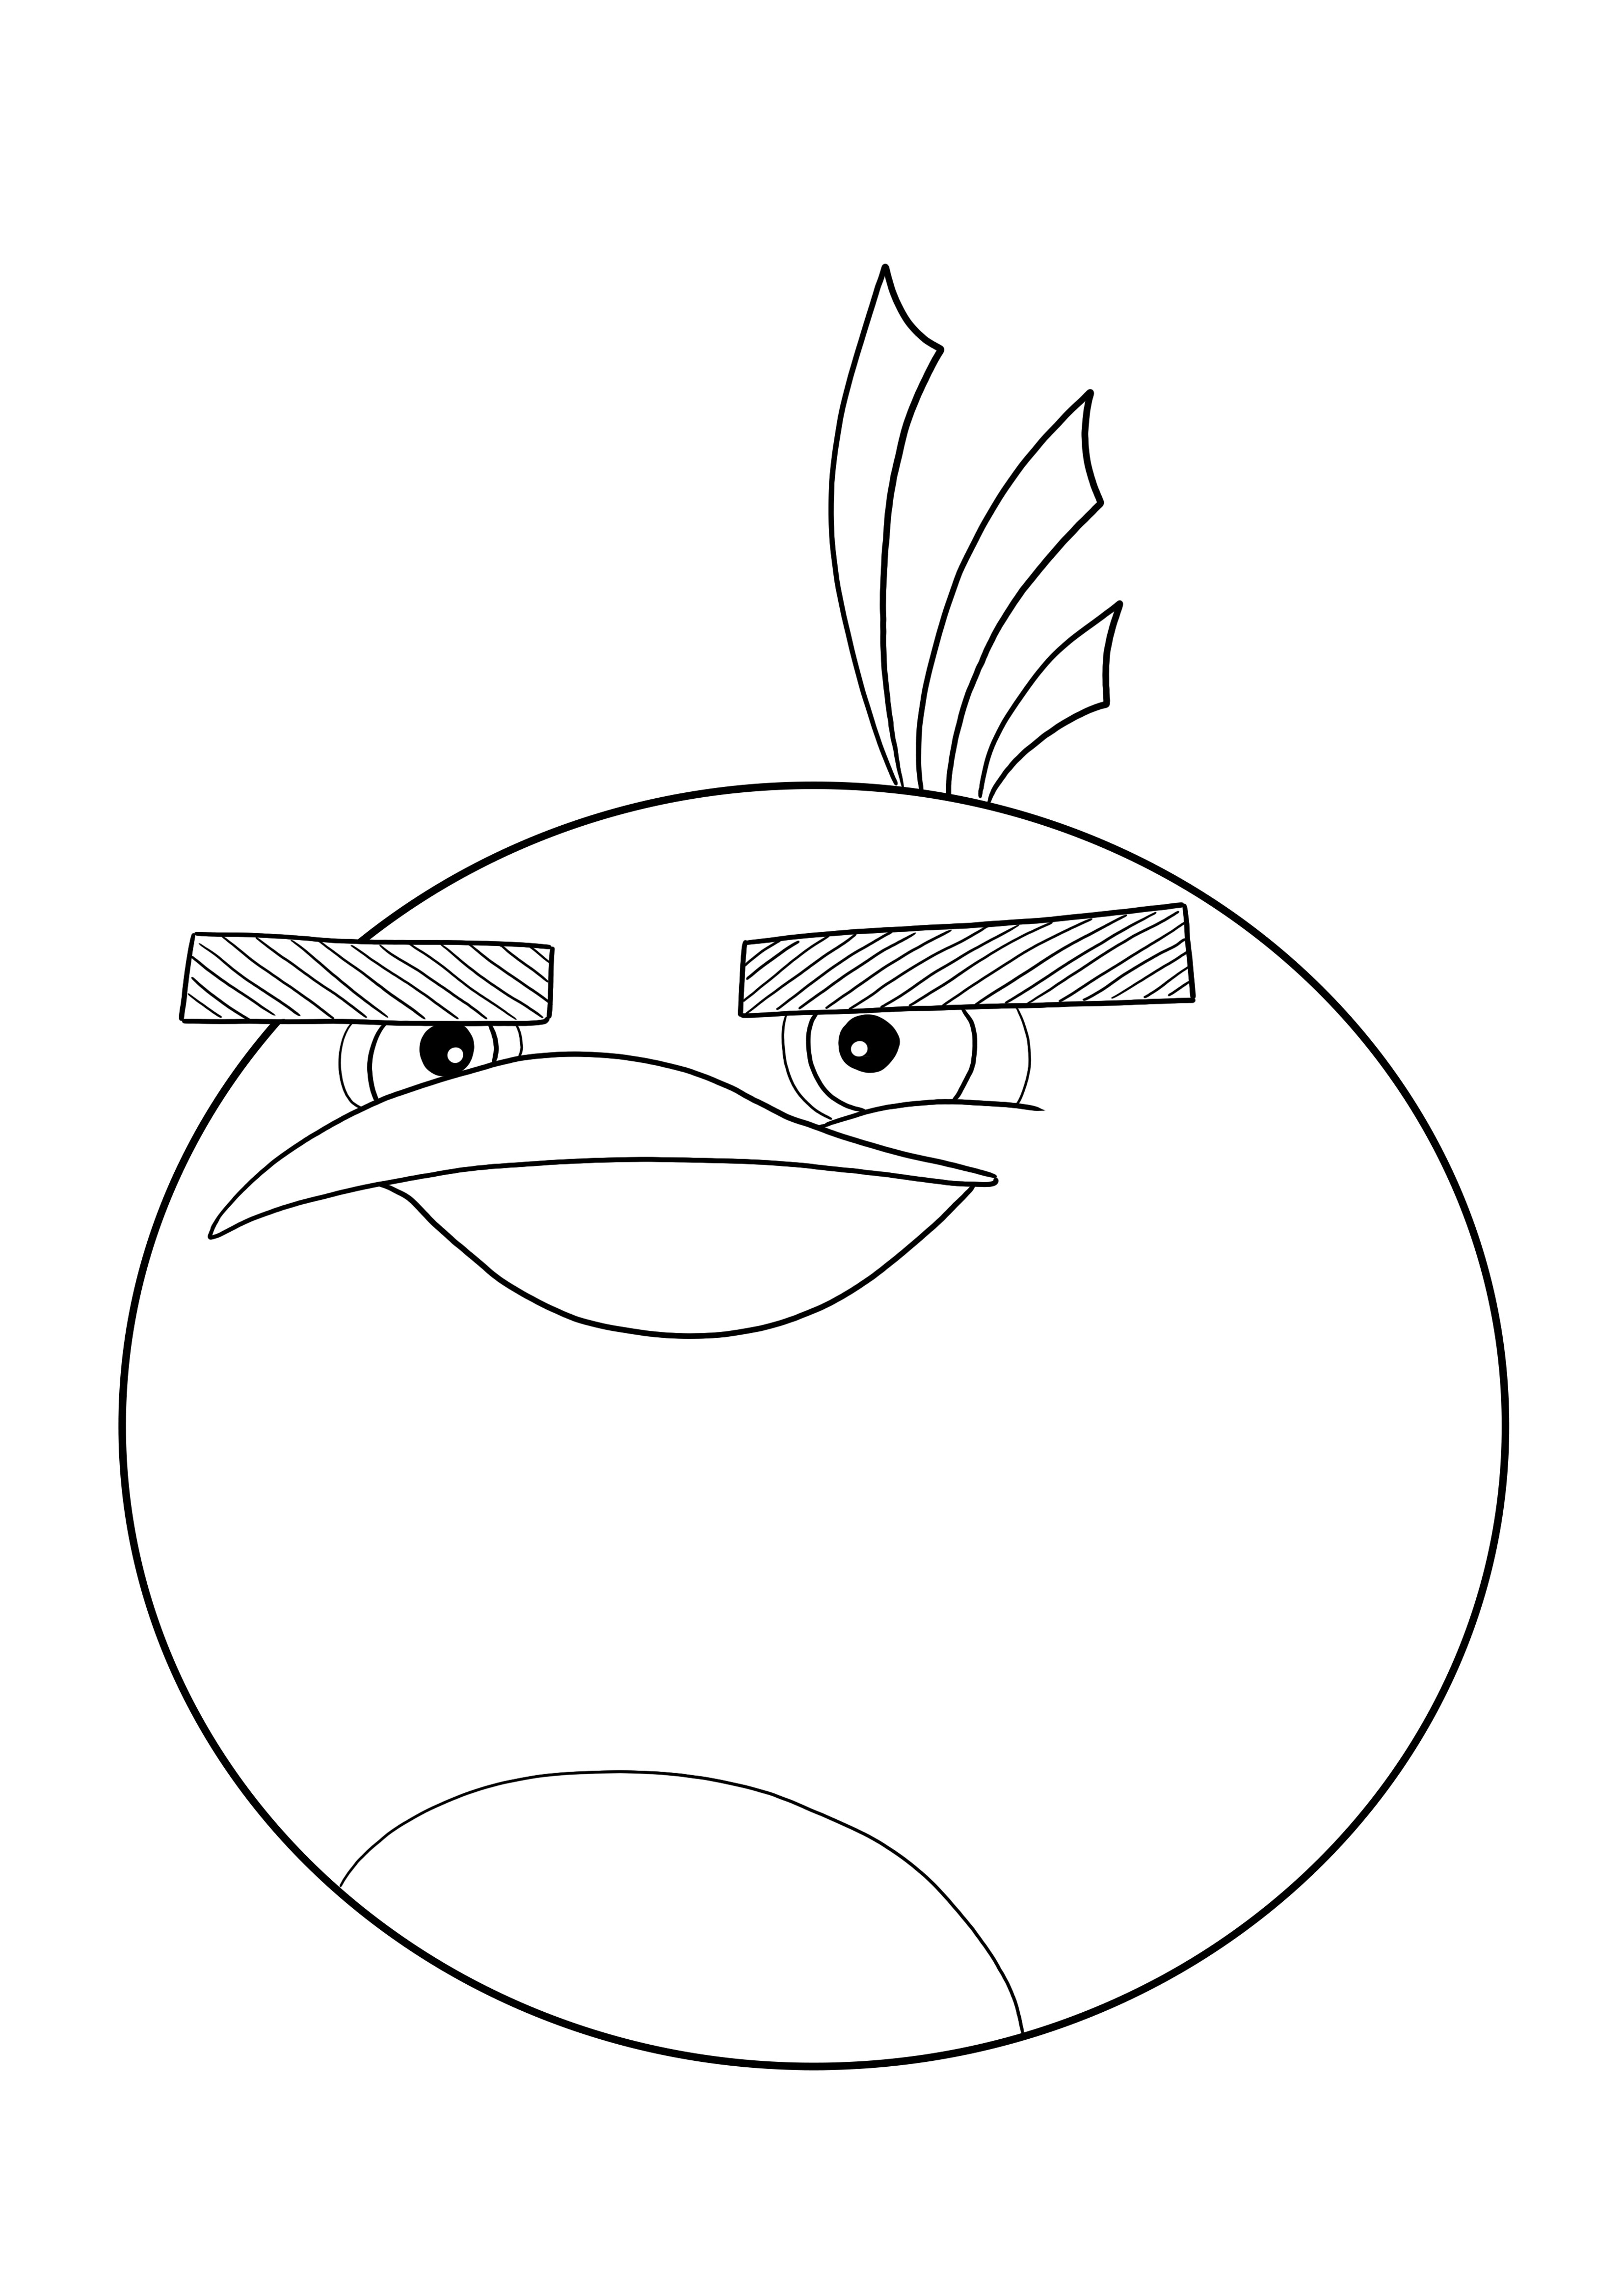 Dibujo para colorear de Bomba de Angry Birds gratis para imprimir y descargar